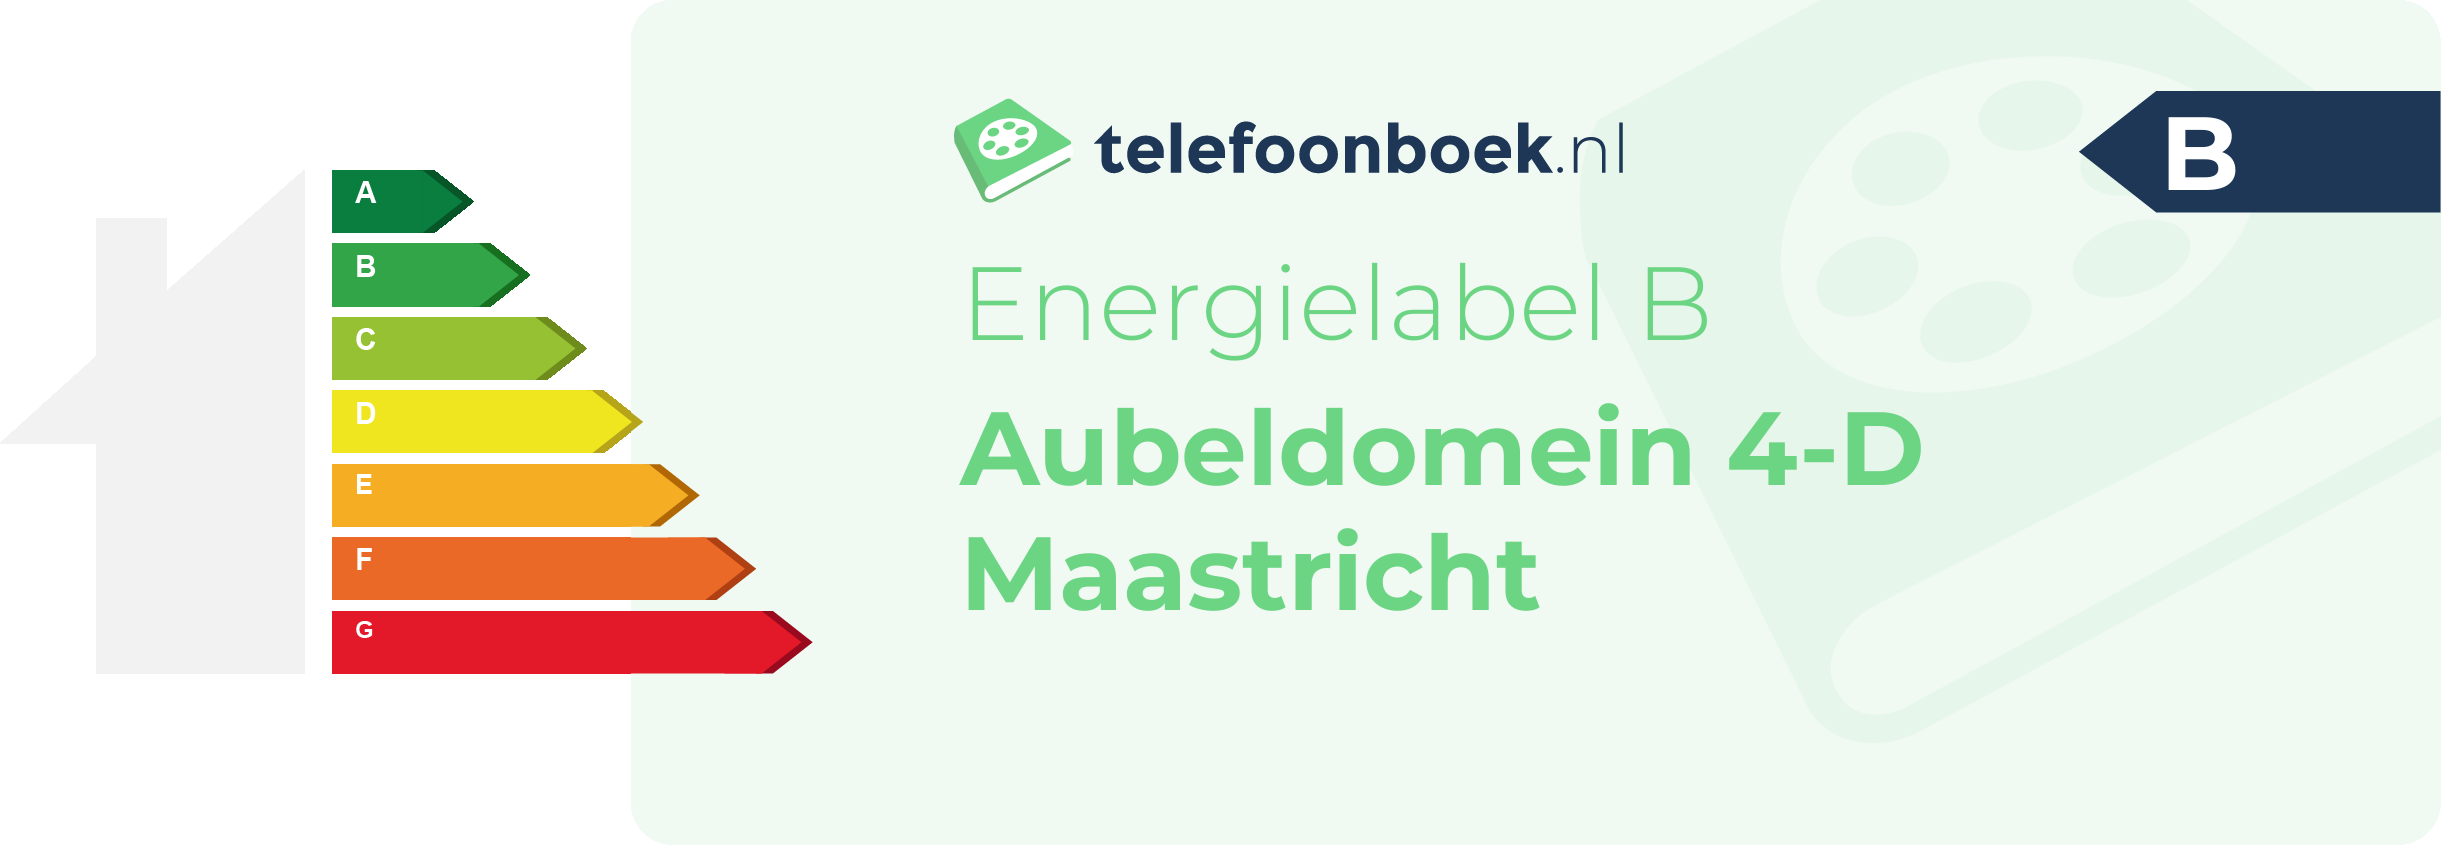 Energielabel Aubeldomein 4-D Maastricht